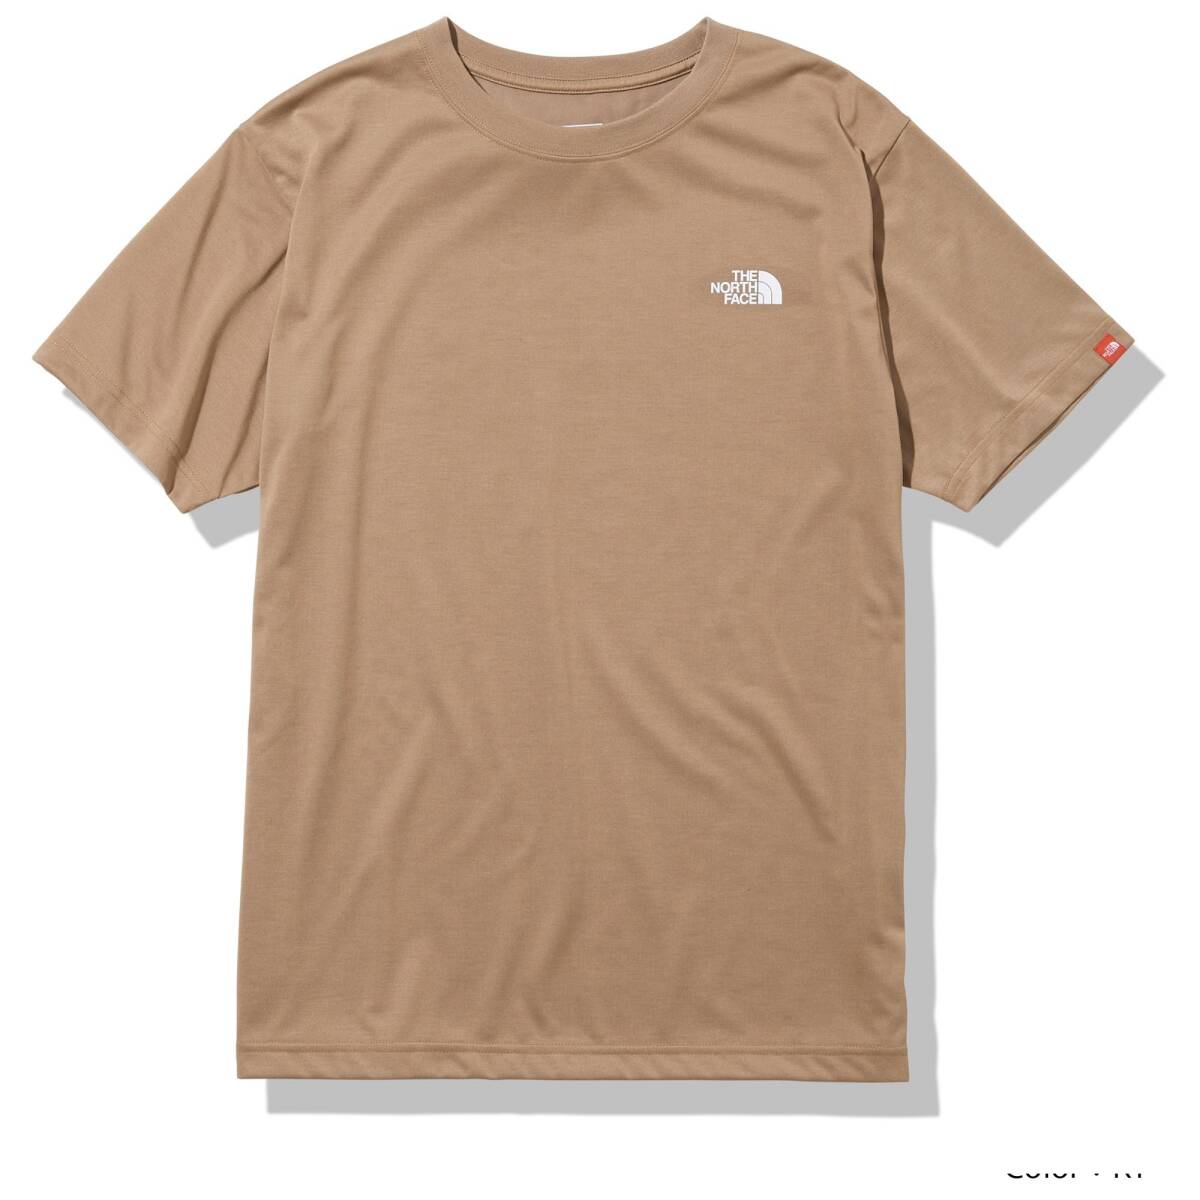 即決☆ノースフェイス スクエア カモフラージュ 半袖Tシャツ KT/Lサイズ 送料込み 迷彩 ケルプタン スクエア ロゴ 速乾